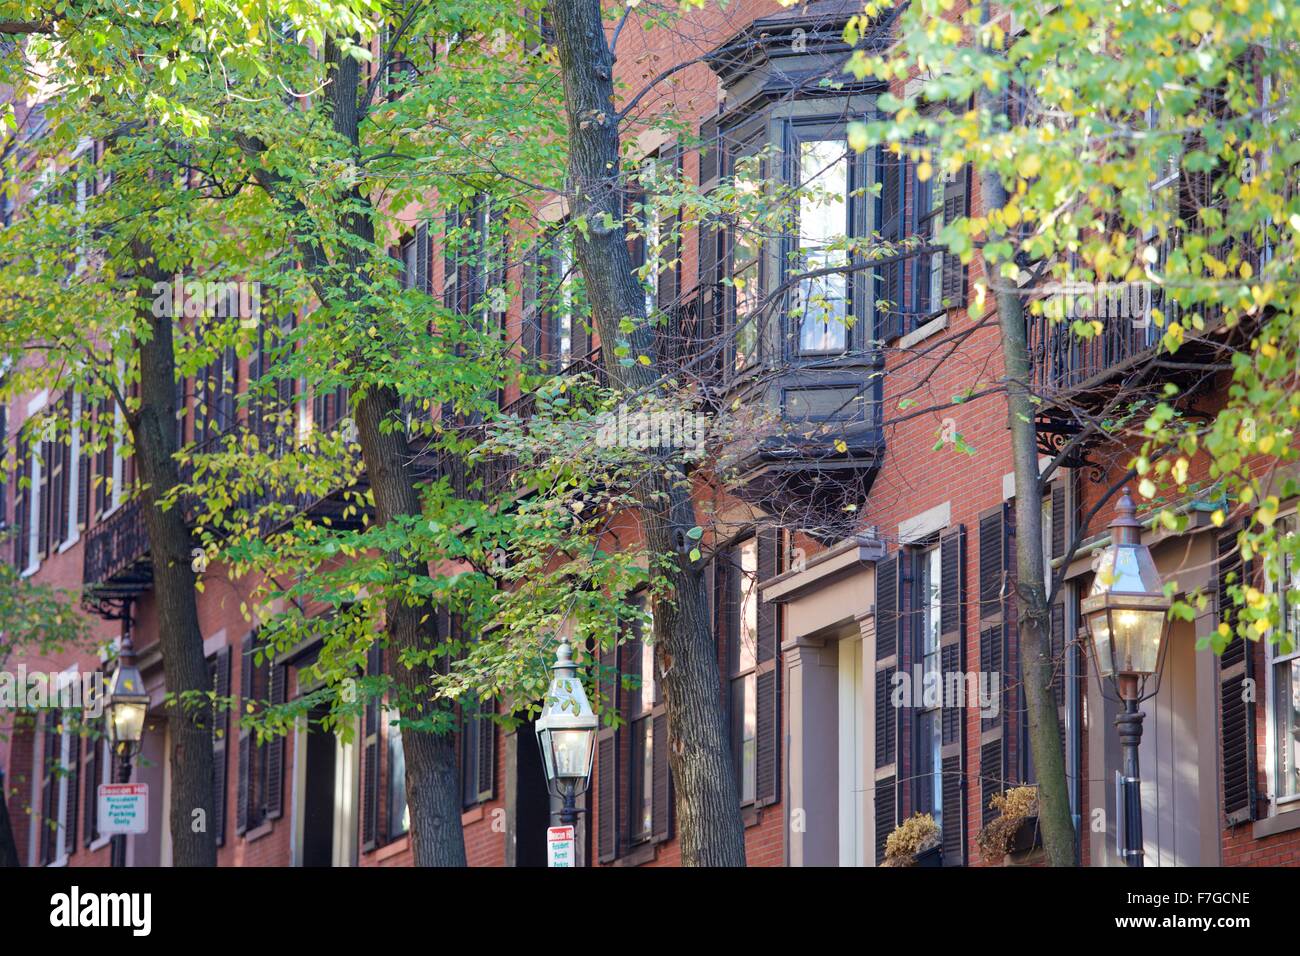 Autumn in the historic neighborhood of Beacon Hill, Boston, Massachusetts Stock Photo